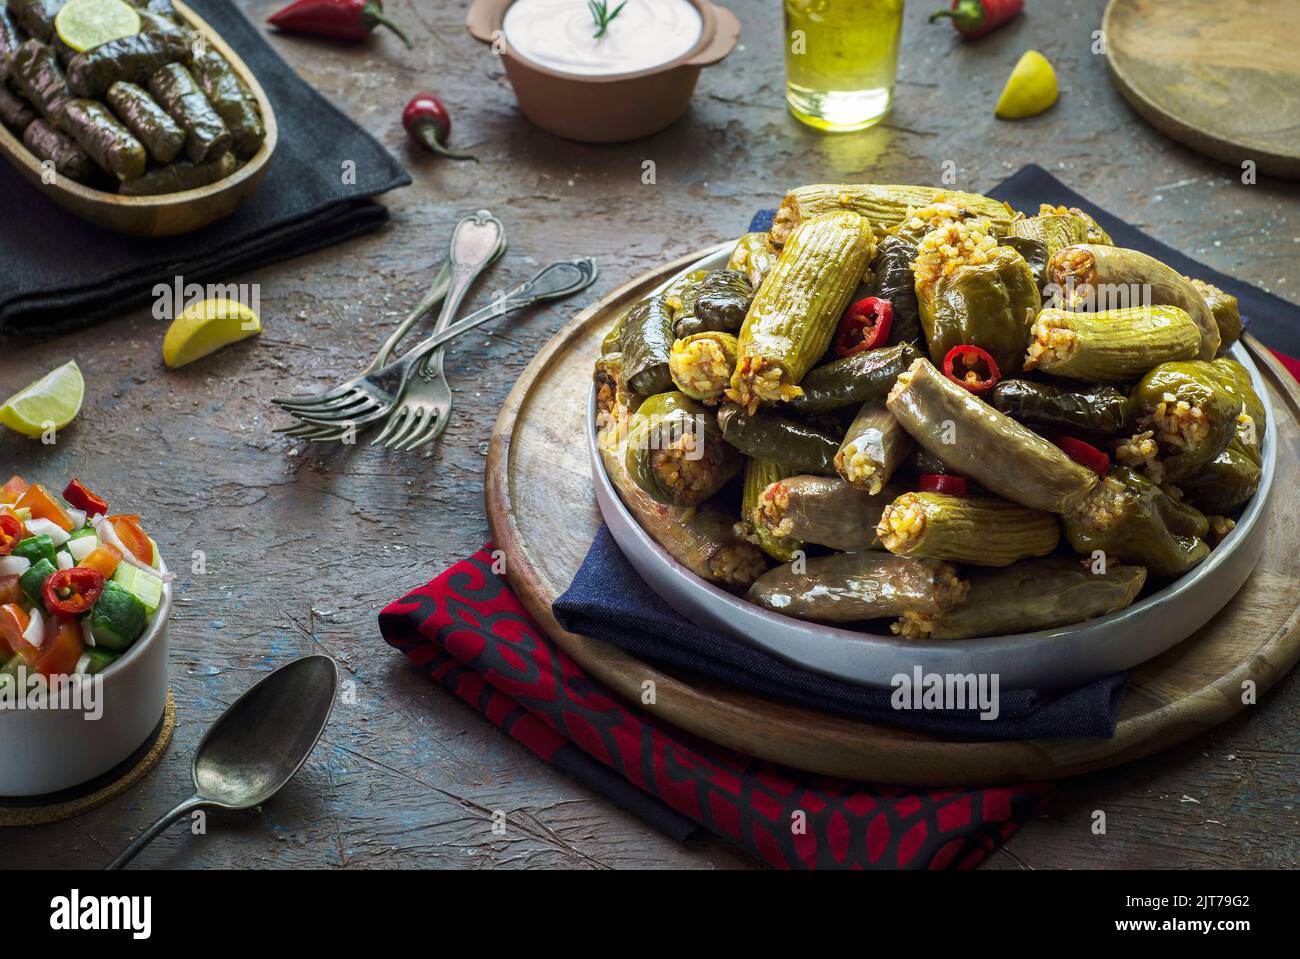 Cucina araba; piatto tradizionale egiziano 'Mahshy' o 'Dolma'. Zucchine farcite, melanzane, pomodori, peperoni e foglie di vite. Foto Stock